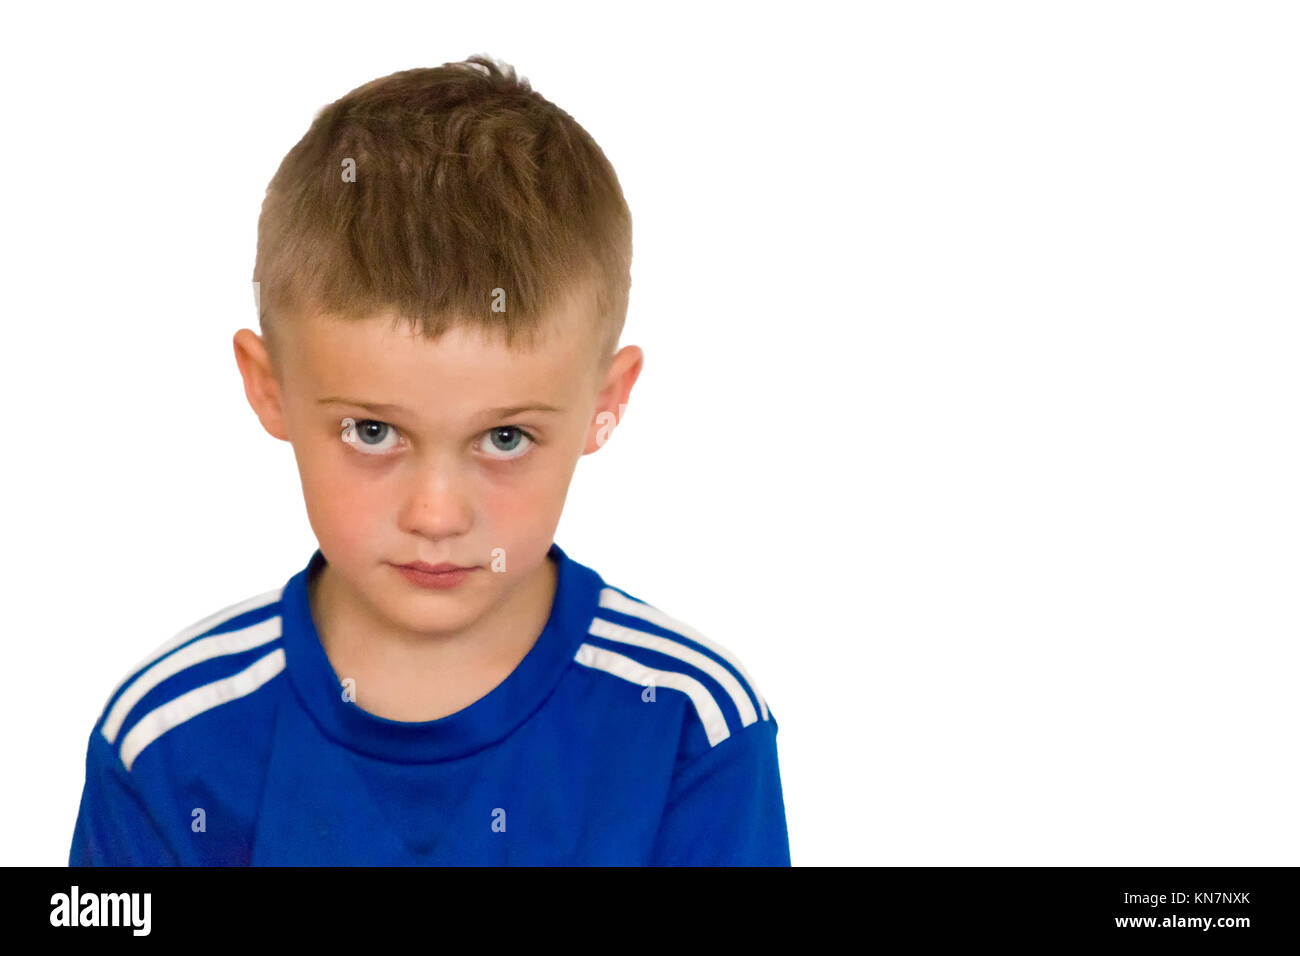 Junge Junge, die Kopf und Schulter Portrait auf weißem Hintergrund Model Release: Ja. Property Release: Nein. Stockfoto